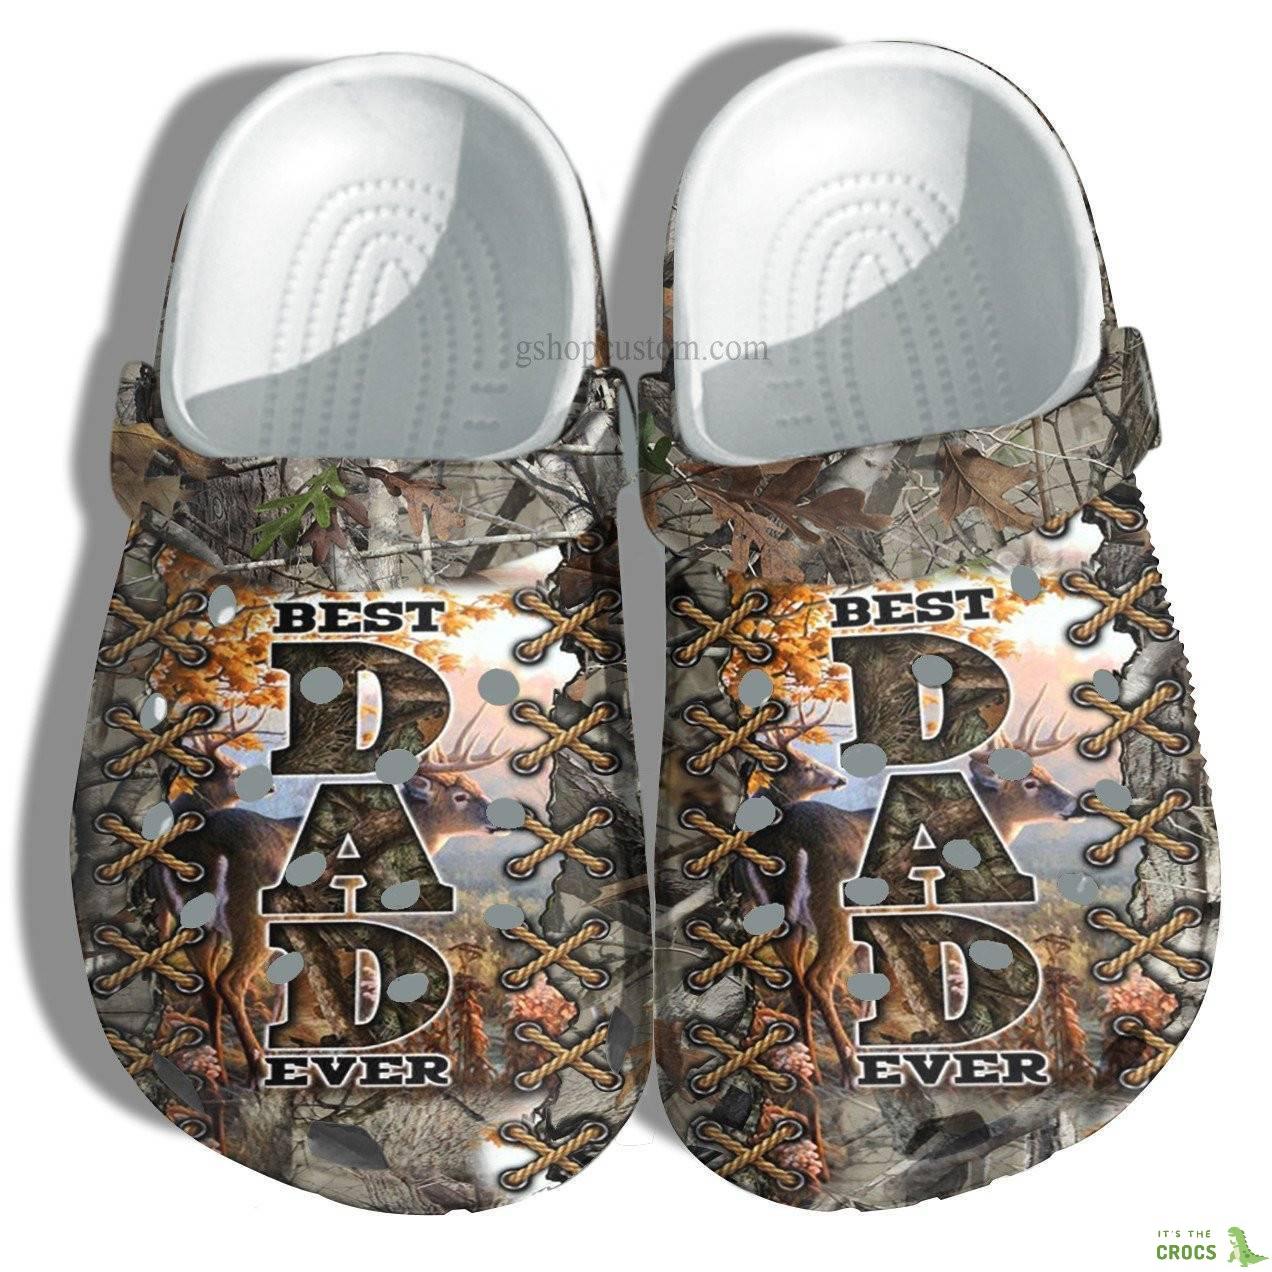 Best Dad Ever Deer Hunter Croc Crocs Clog Shoes Gift Uncle Father Day – Deer Hunting Camo Vintage Crocs Clog Shoes